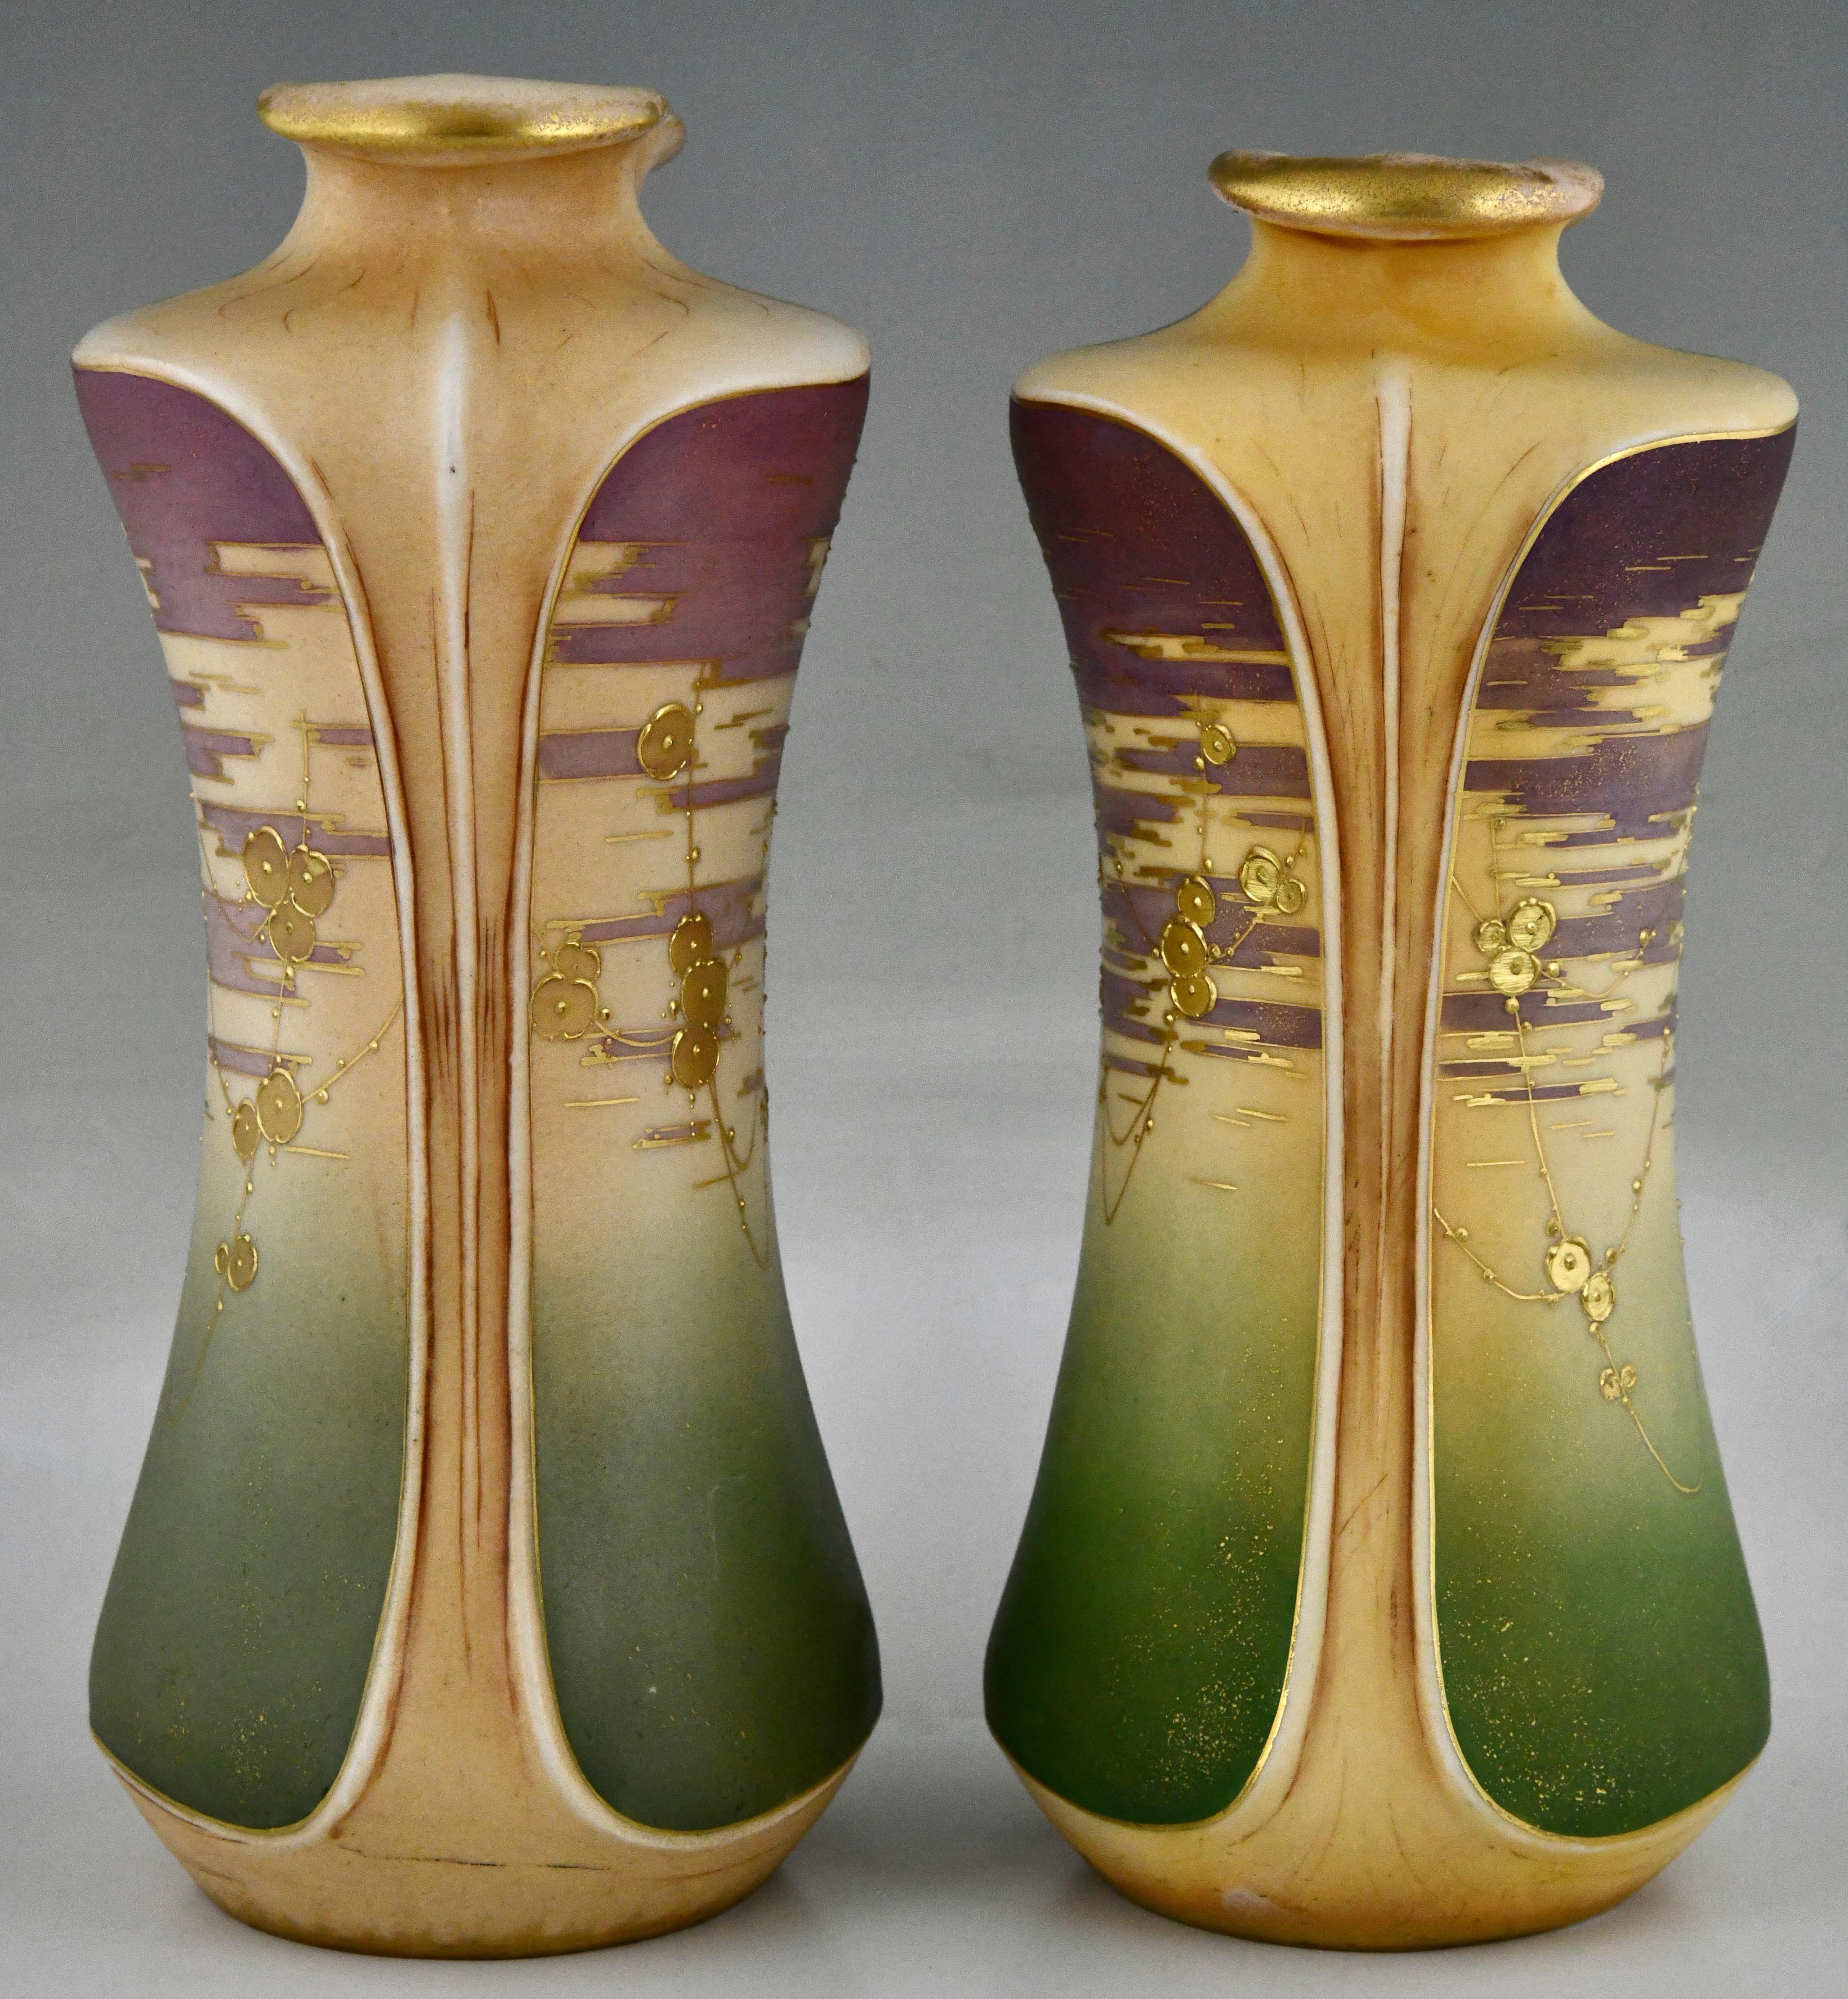 Début du 20ème siècle Vases en céramique Art nouveau avec fleurs dorées par Turn Teplitz Amphora Autriche 1900 en vente